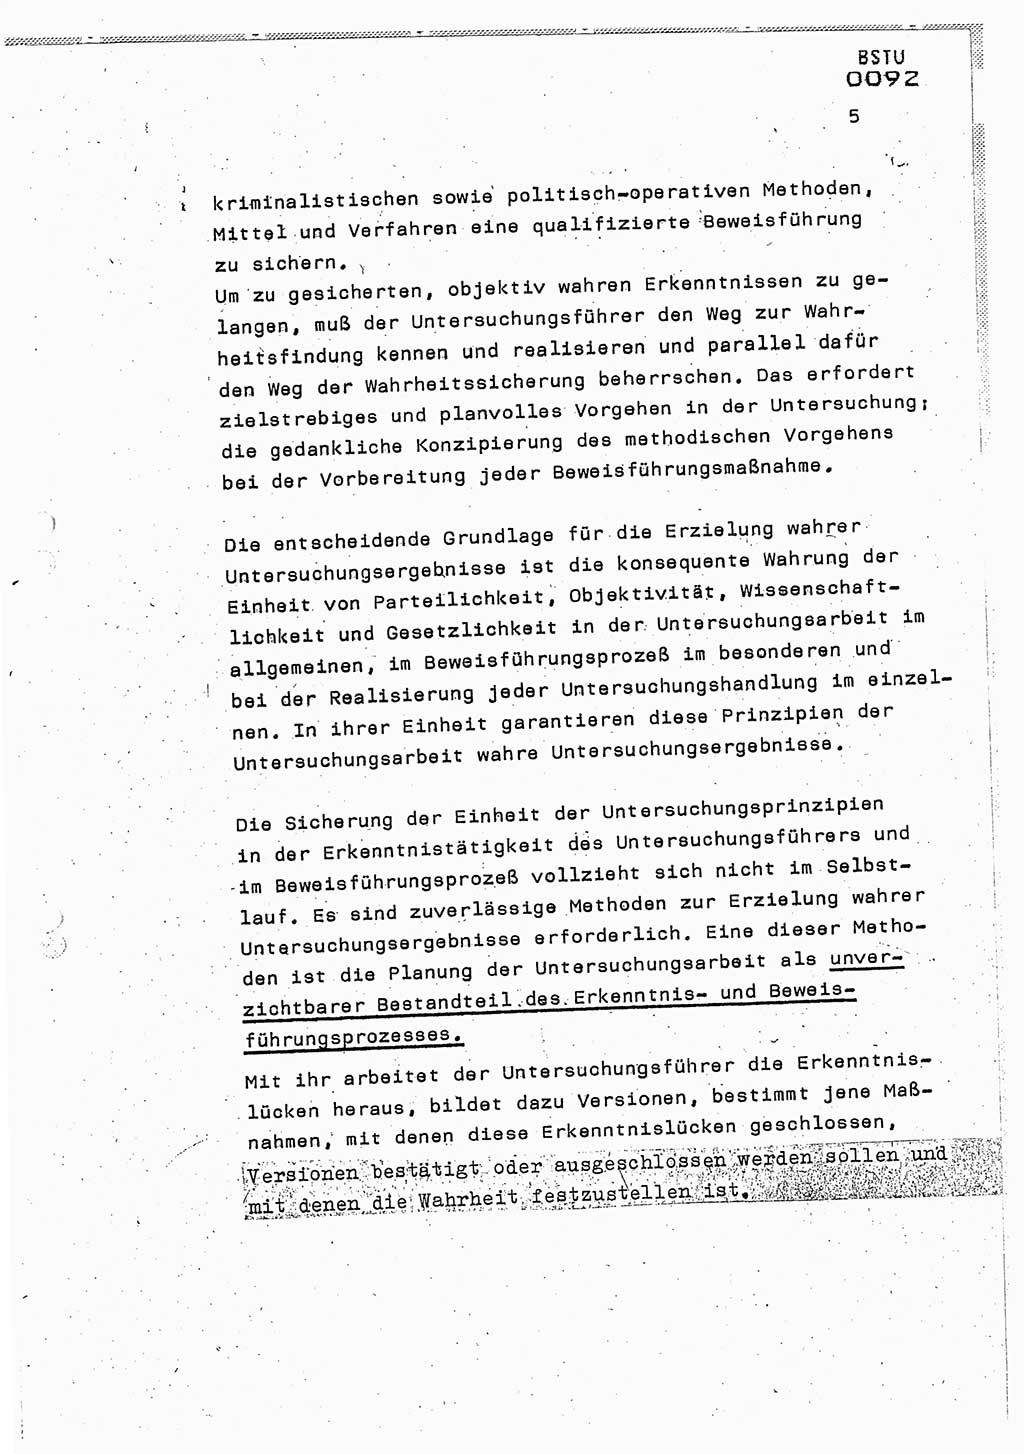 Lektion Ministerium für Staatssicherheit (MfS) [Deutsche Demokratische Republik (DDR)], Hauptabteilung (HA) Ⅸ, Berlin 1987, Seite 5 (Lekt. Pln. Bearb. EV MfS DDR HA Ⅸ /87 1987, S. 5)